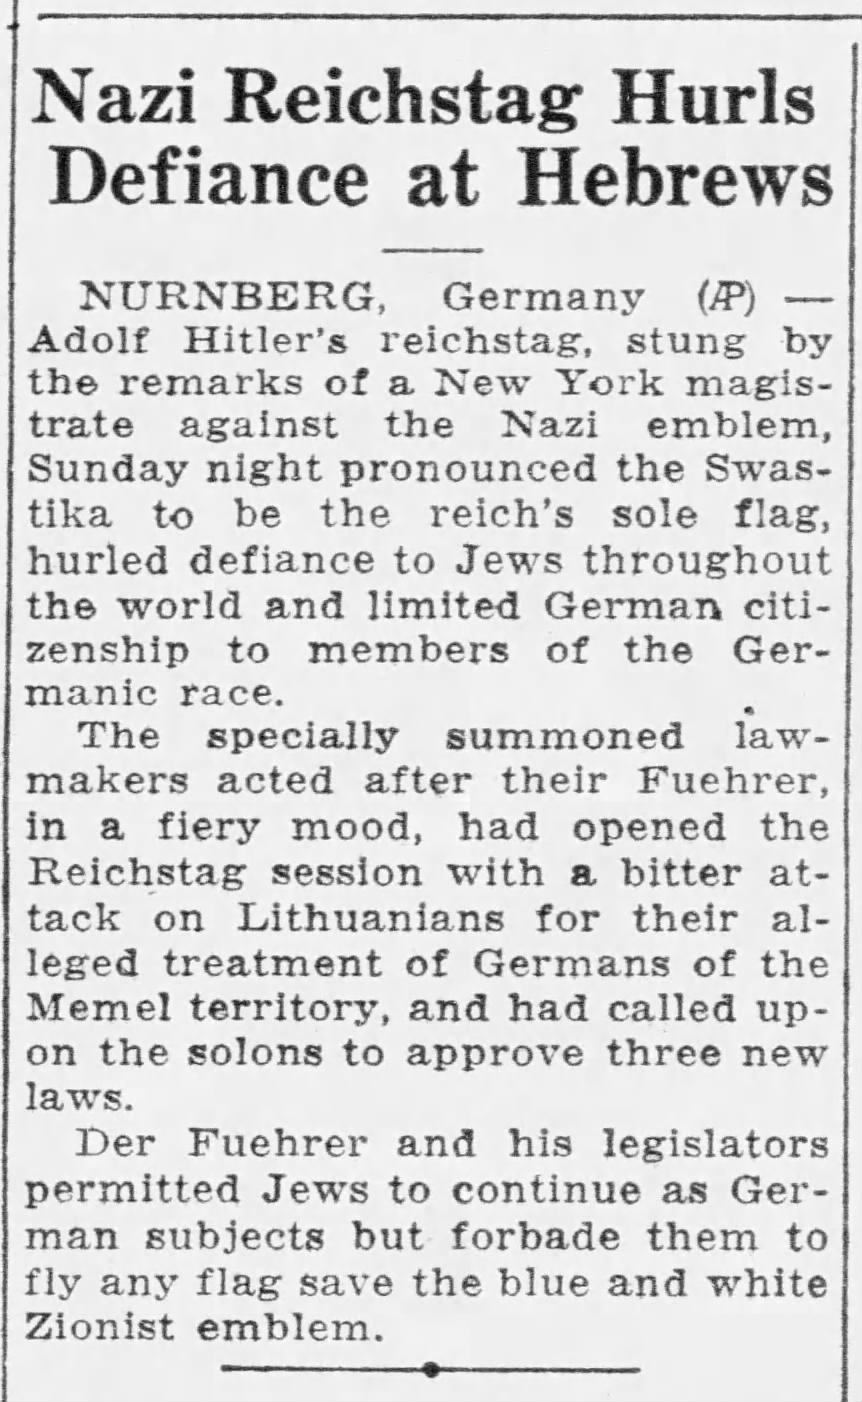 Nazi Reichstag Hurls Defiance at Hebrews